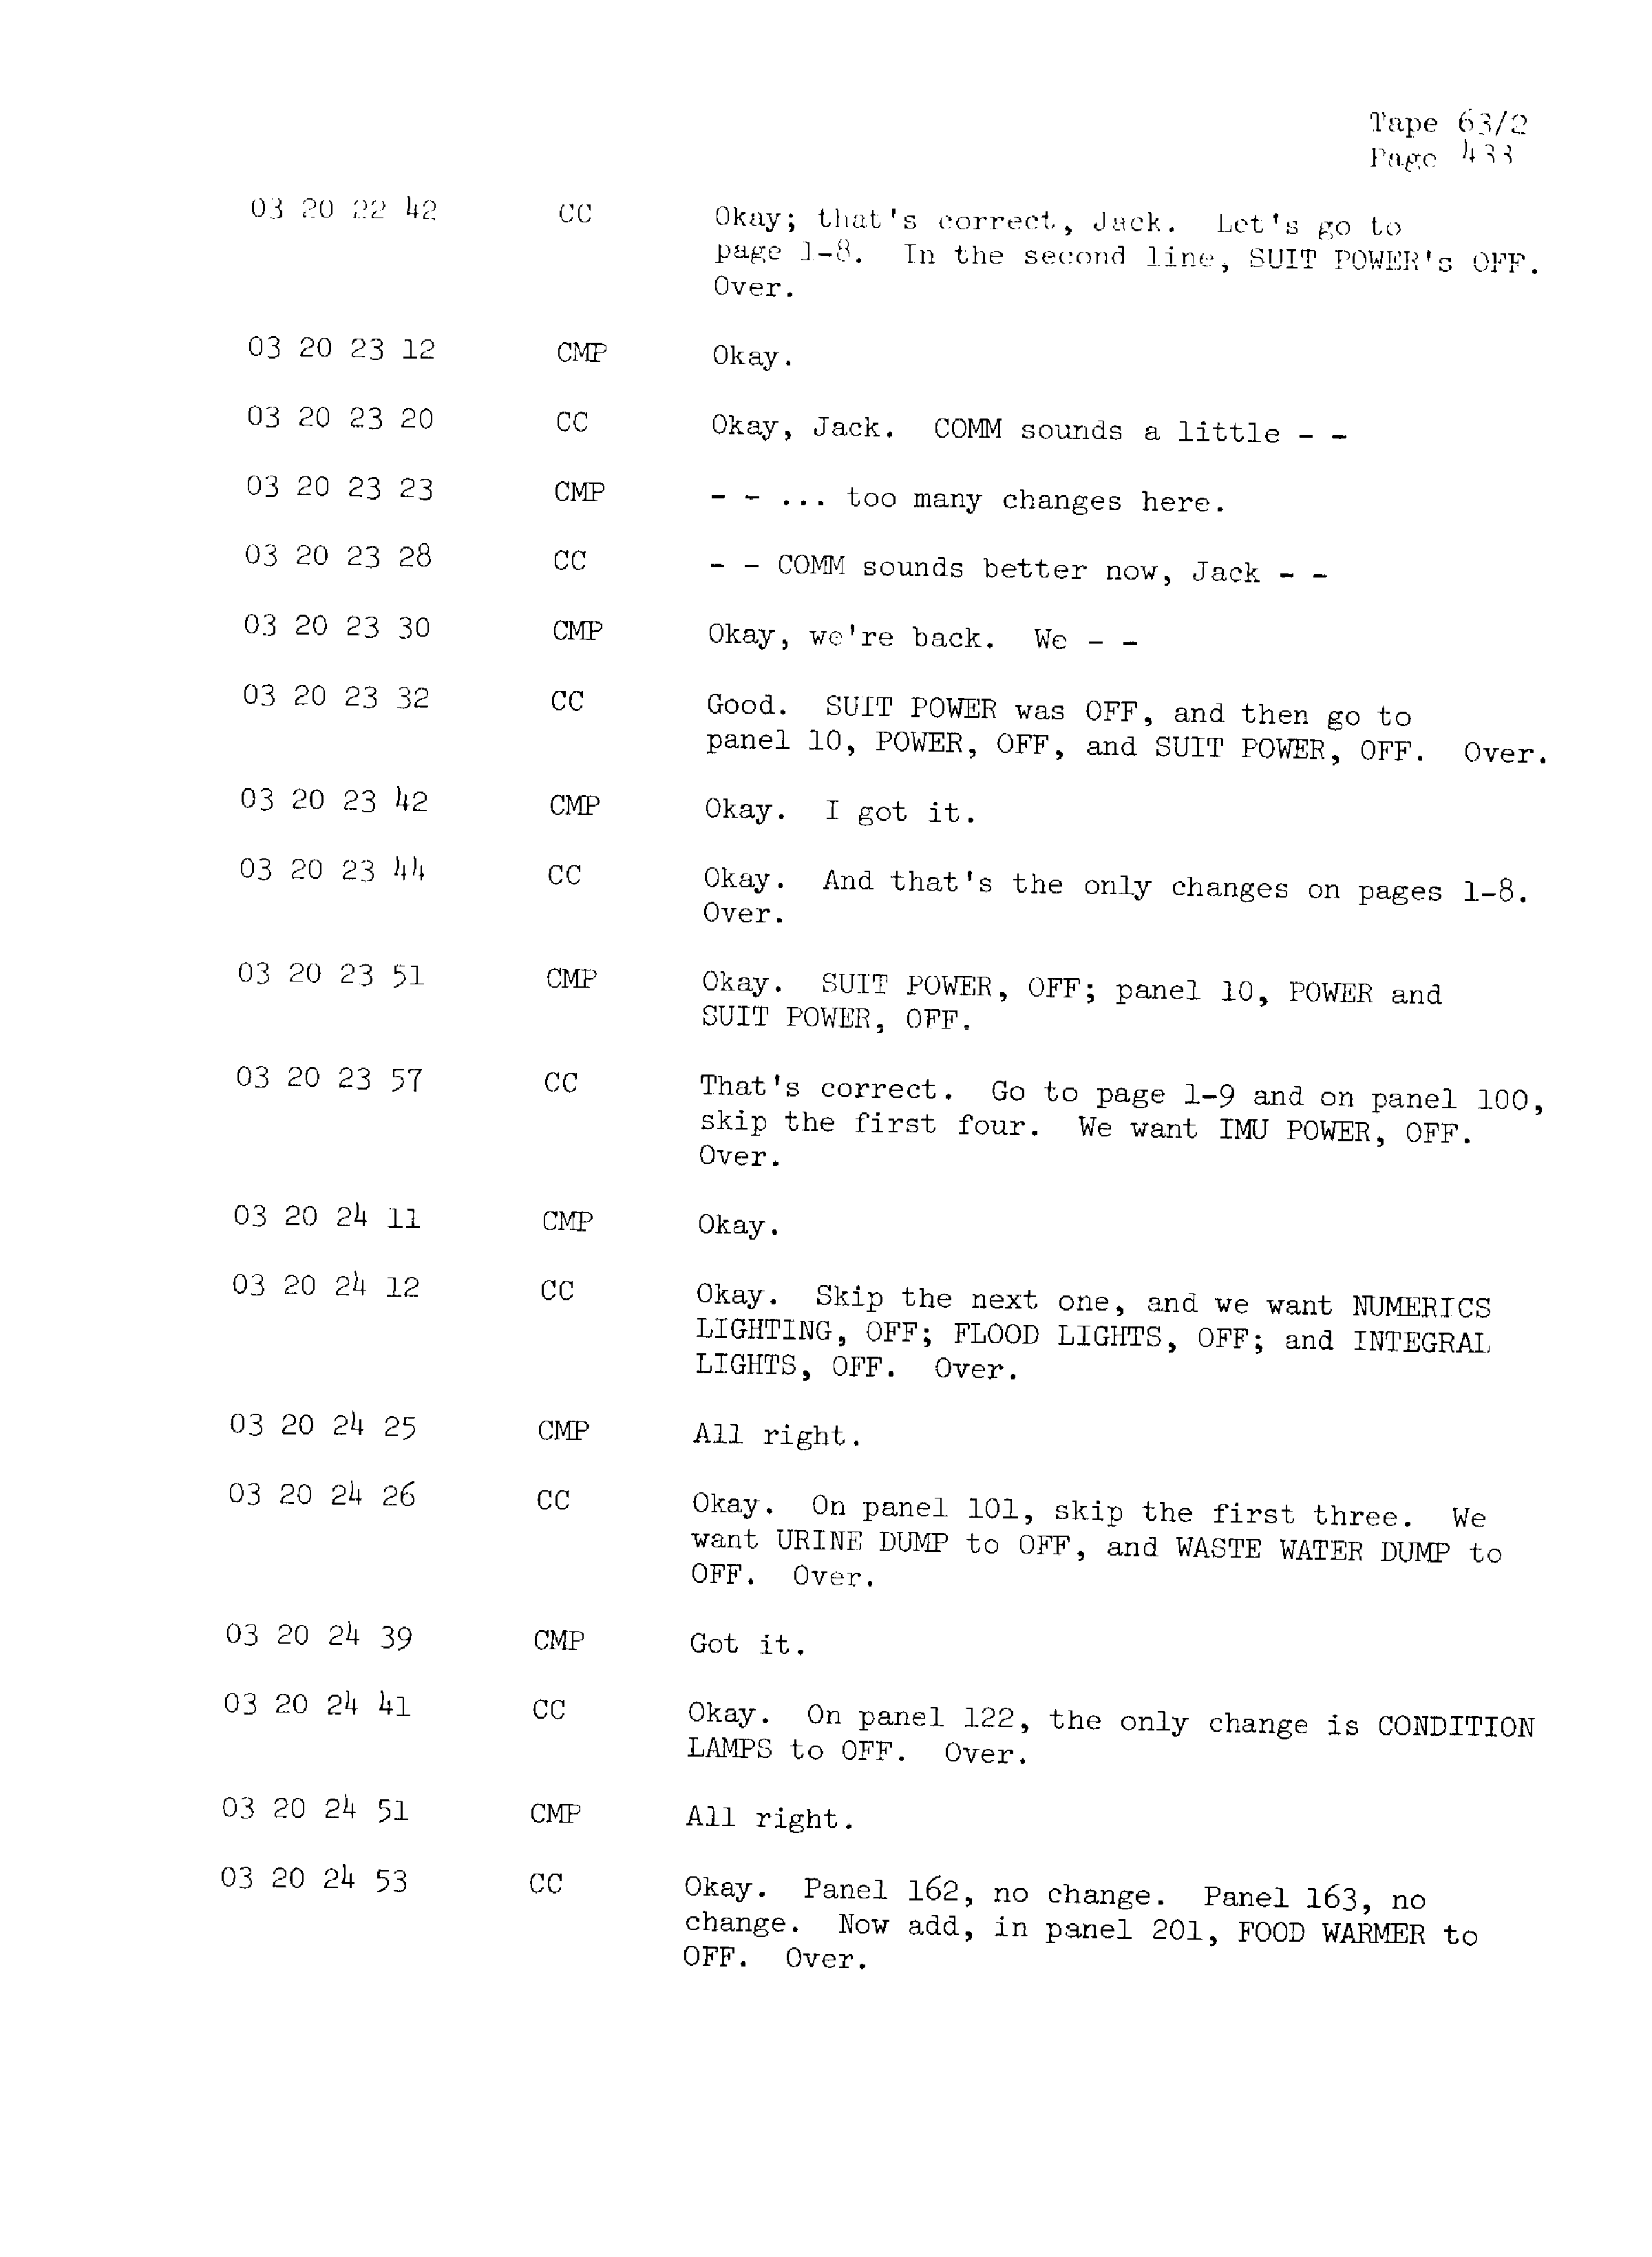 Page 440 of Apollo 13’s original transcript